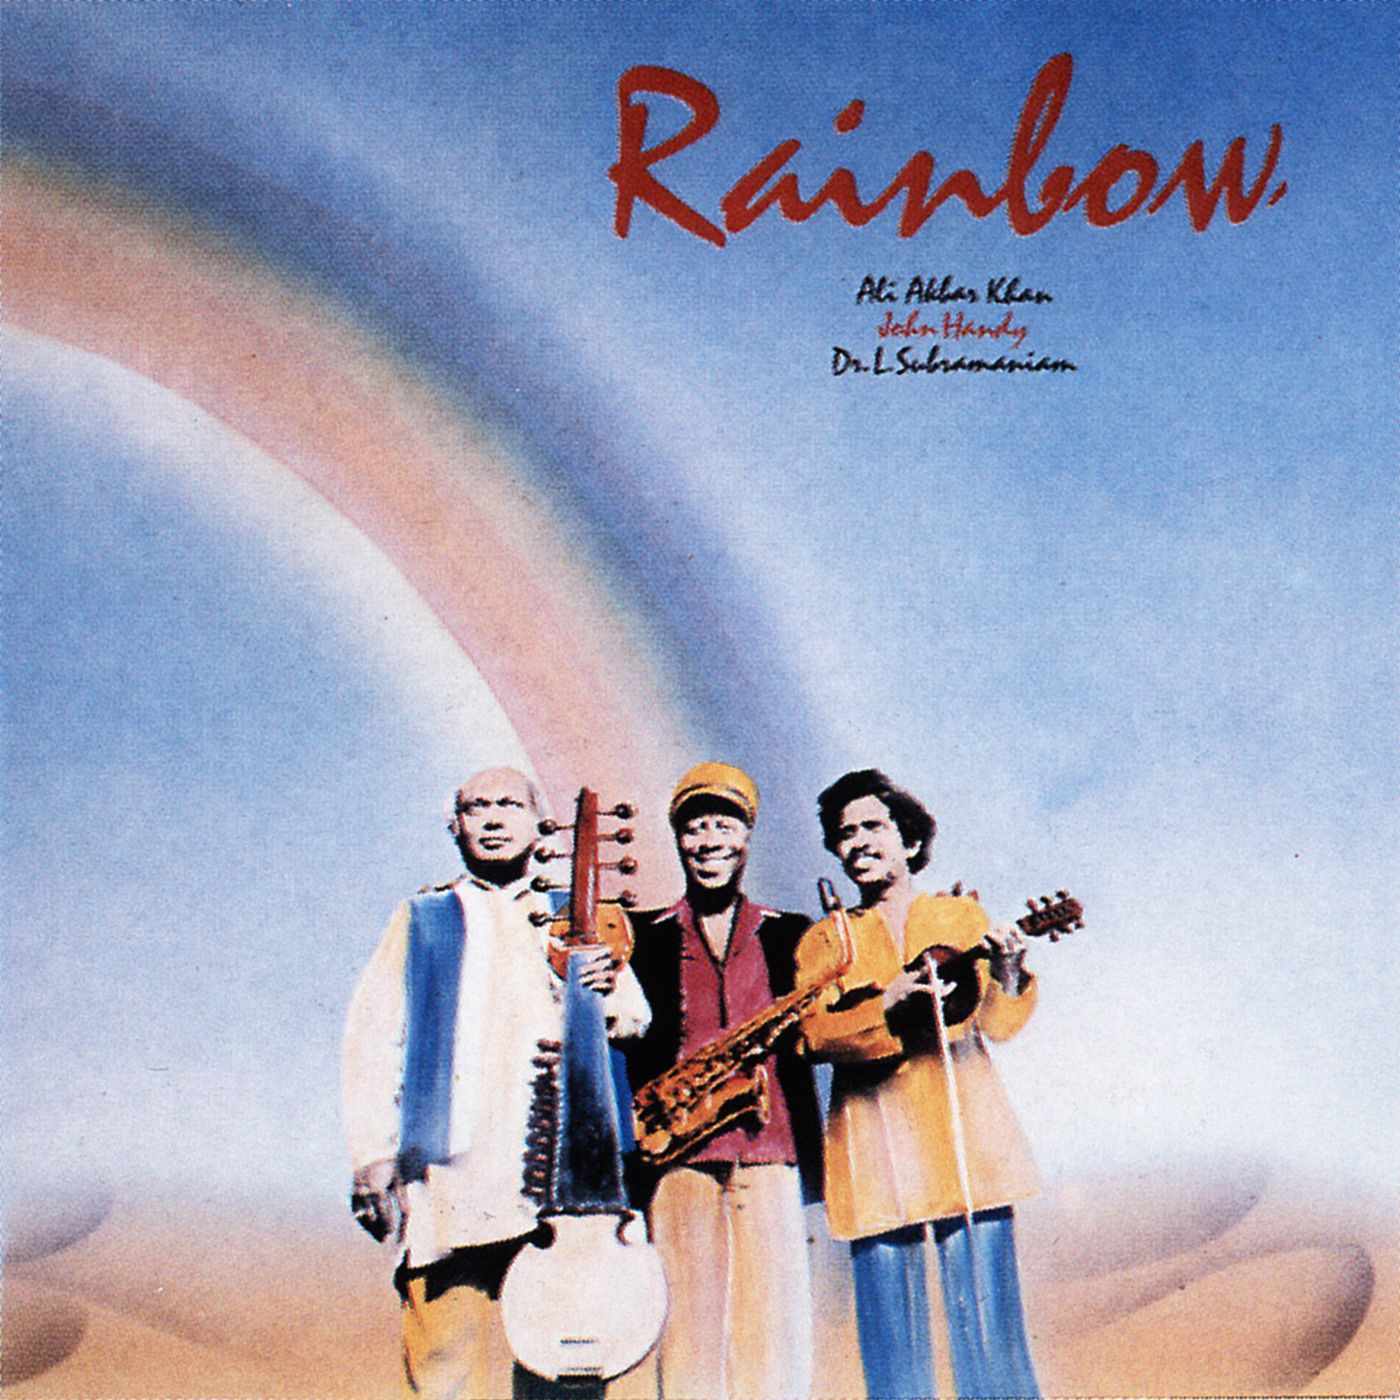 Ali Akbar Khan, John Handy – Rainbow (1981/2016) [Qobuz FLAC 24bit/88,2kHz]